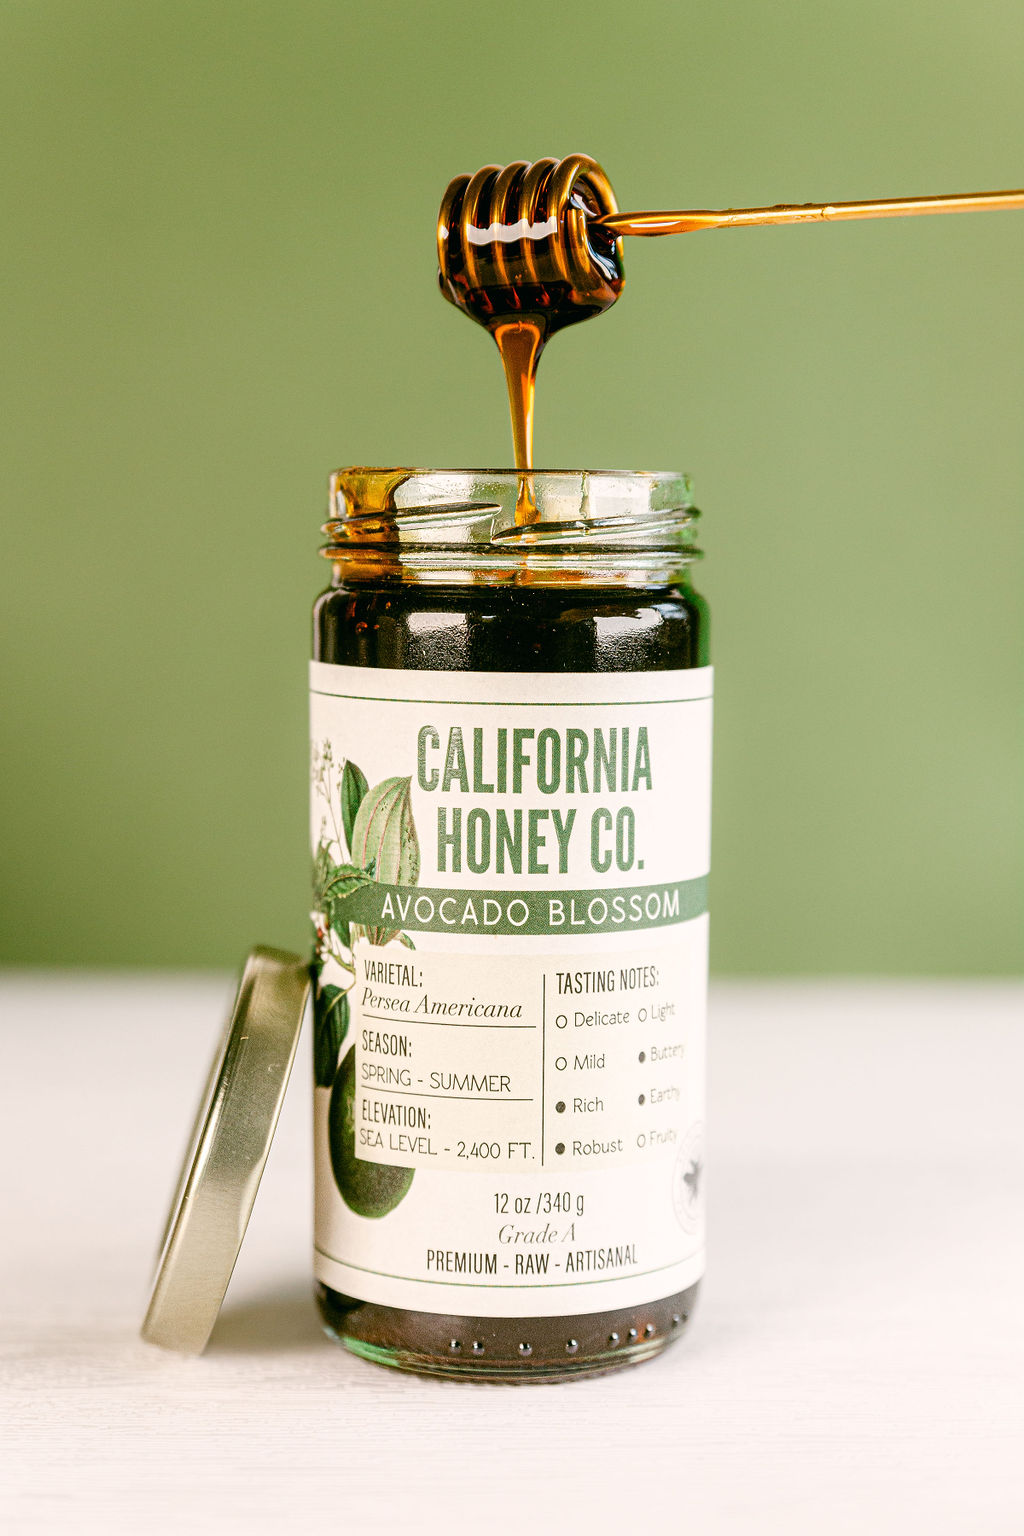 Avocado Blossom honey food product photographer san diego california